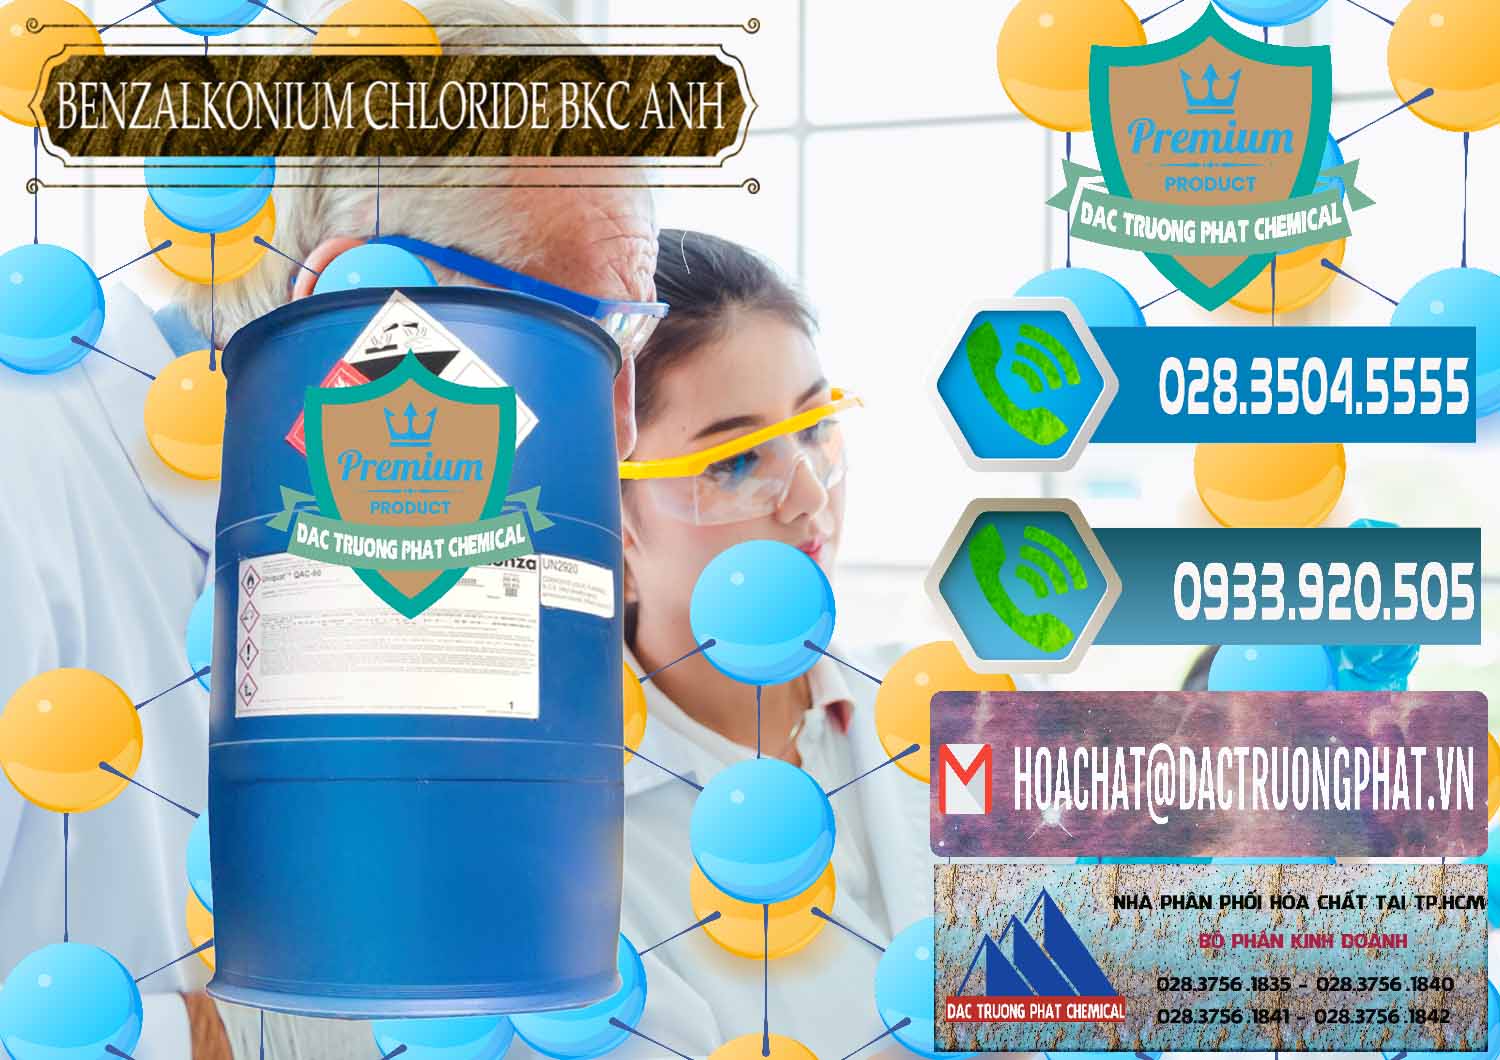 Cty chuyên nhập khẩu _ bán BKC - Benzalkonium Chloride 80% Anh Quốc Uk Kingdoms - 0457 - Cty phân phối & cung cấp hóa chất tại TP.HCM - congtyhoachat.net